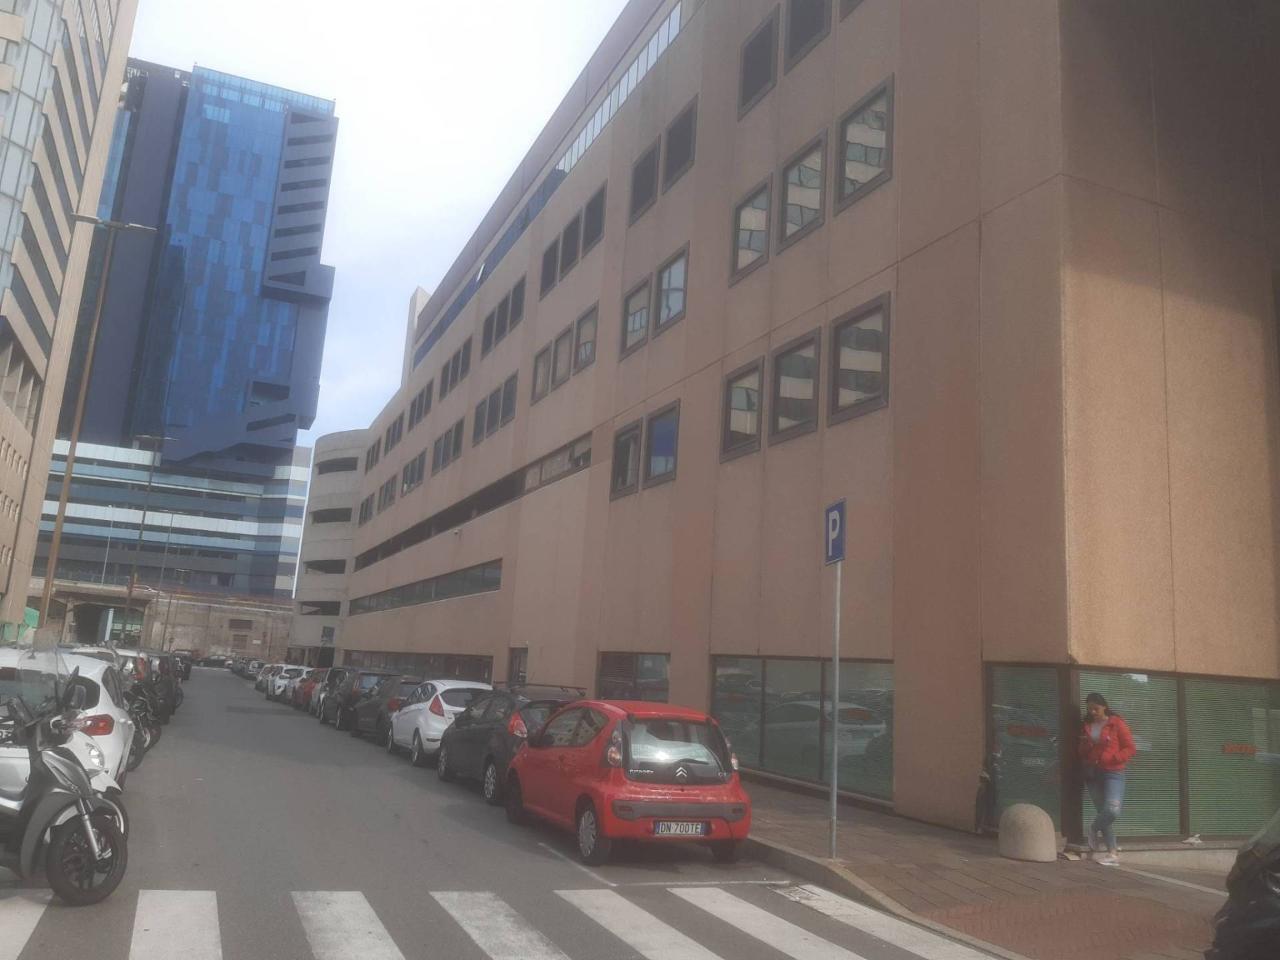 Ufficio condiviso in vendita a Genova